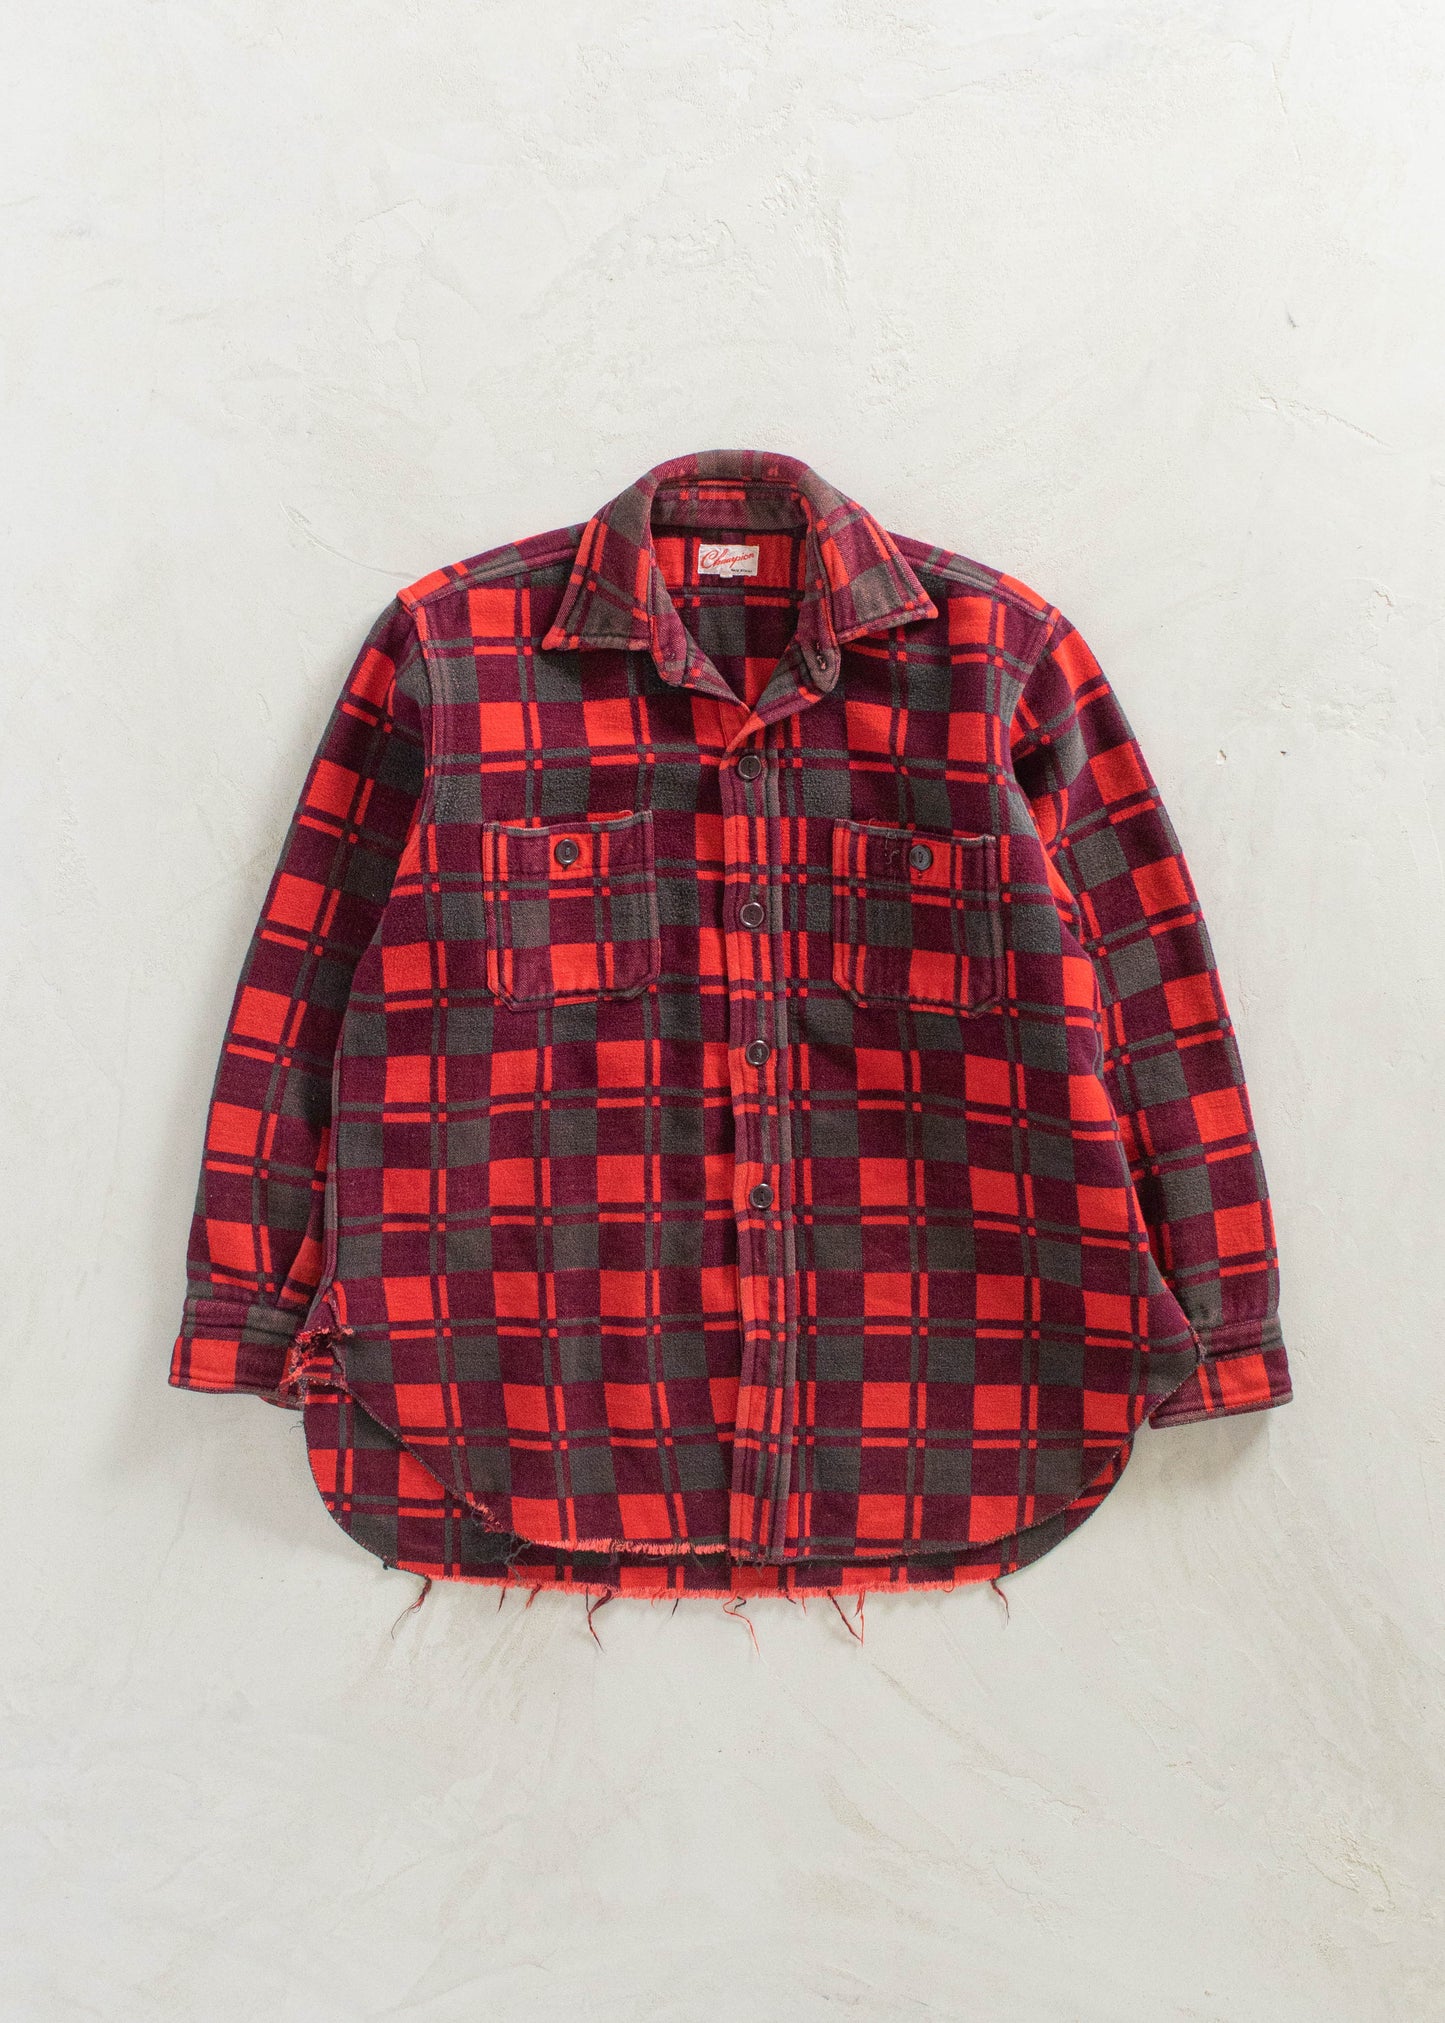 1980s Champion Cotton Flannel Button Up Shirt Size S/M